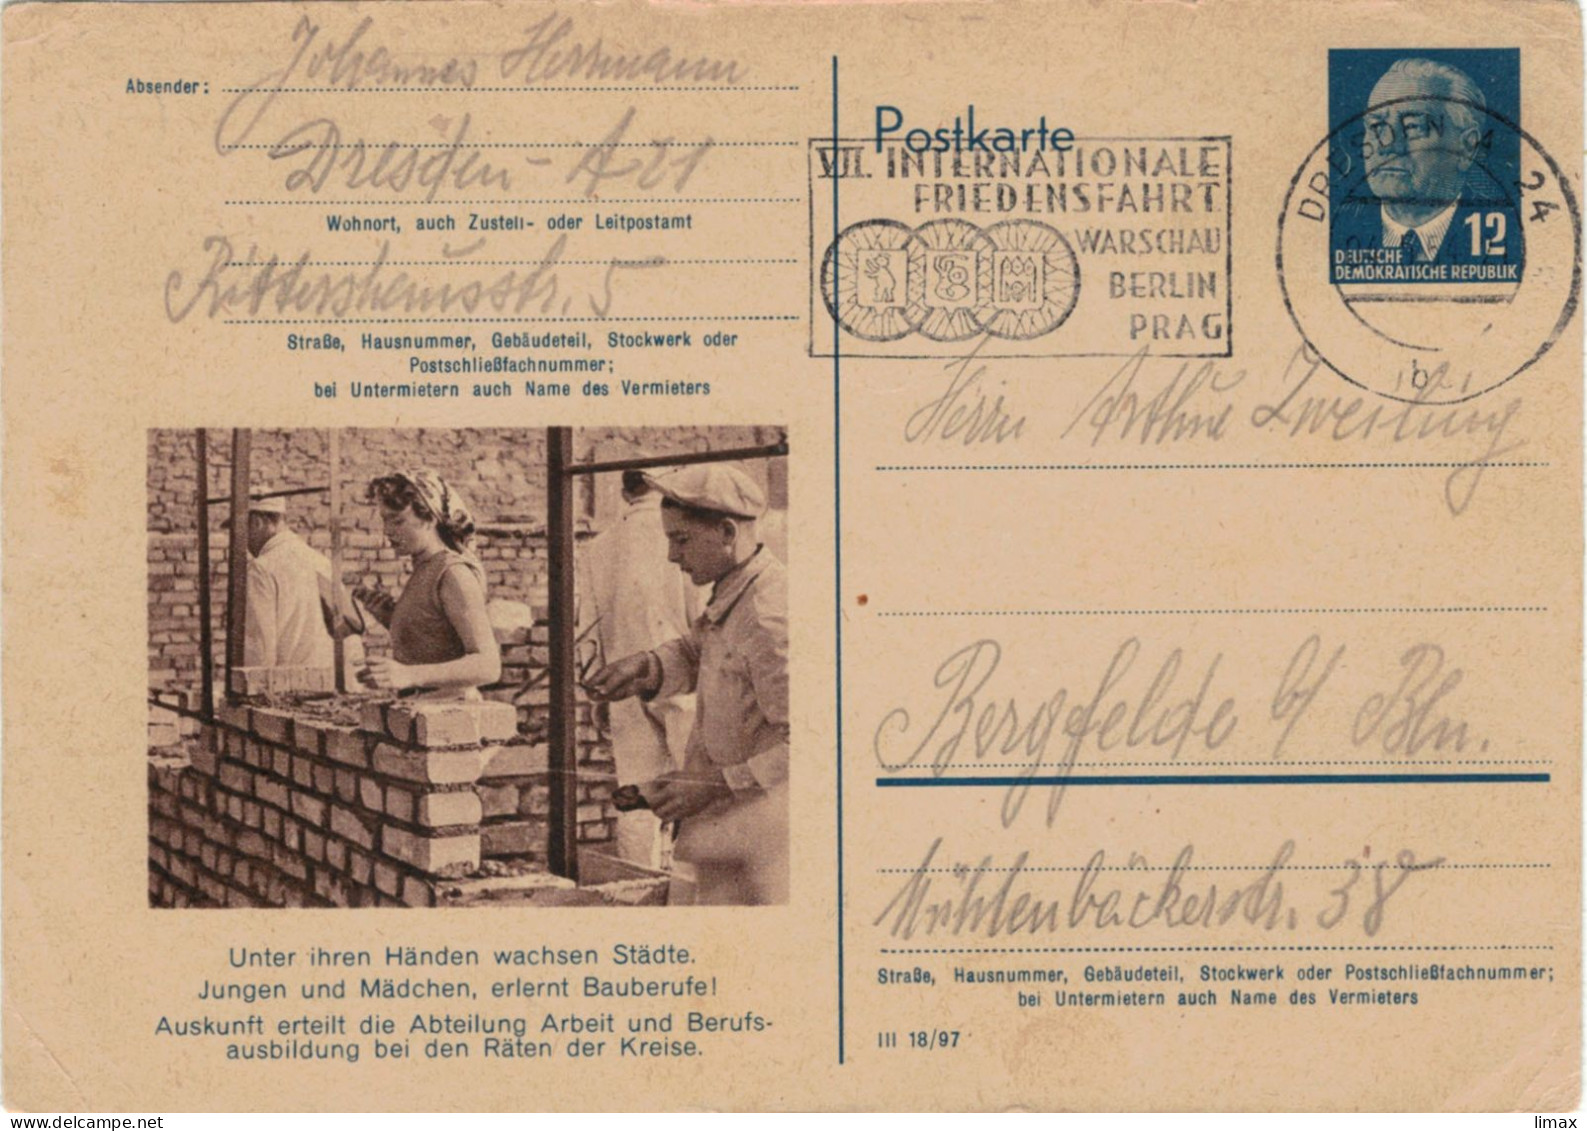 Niemand Hat Die Absicht, Eine Mauer Zu Errichten! - Berlin 1954 - Ganzsache Ziegel Maurer Mörtel DDR Pieck Friedensfahrt - Cartes Postales - Oblitérées